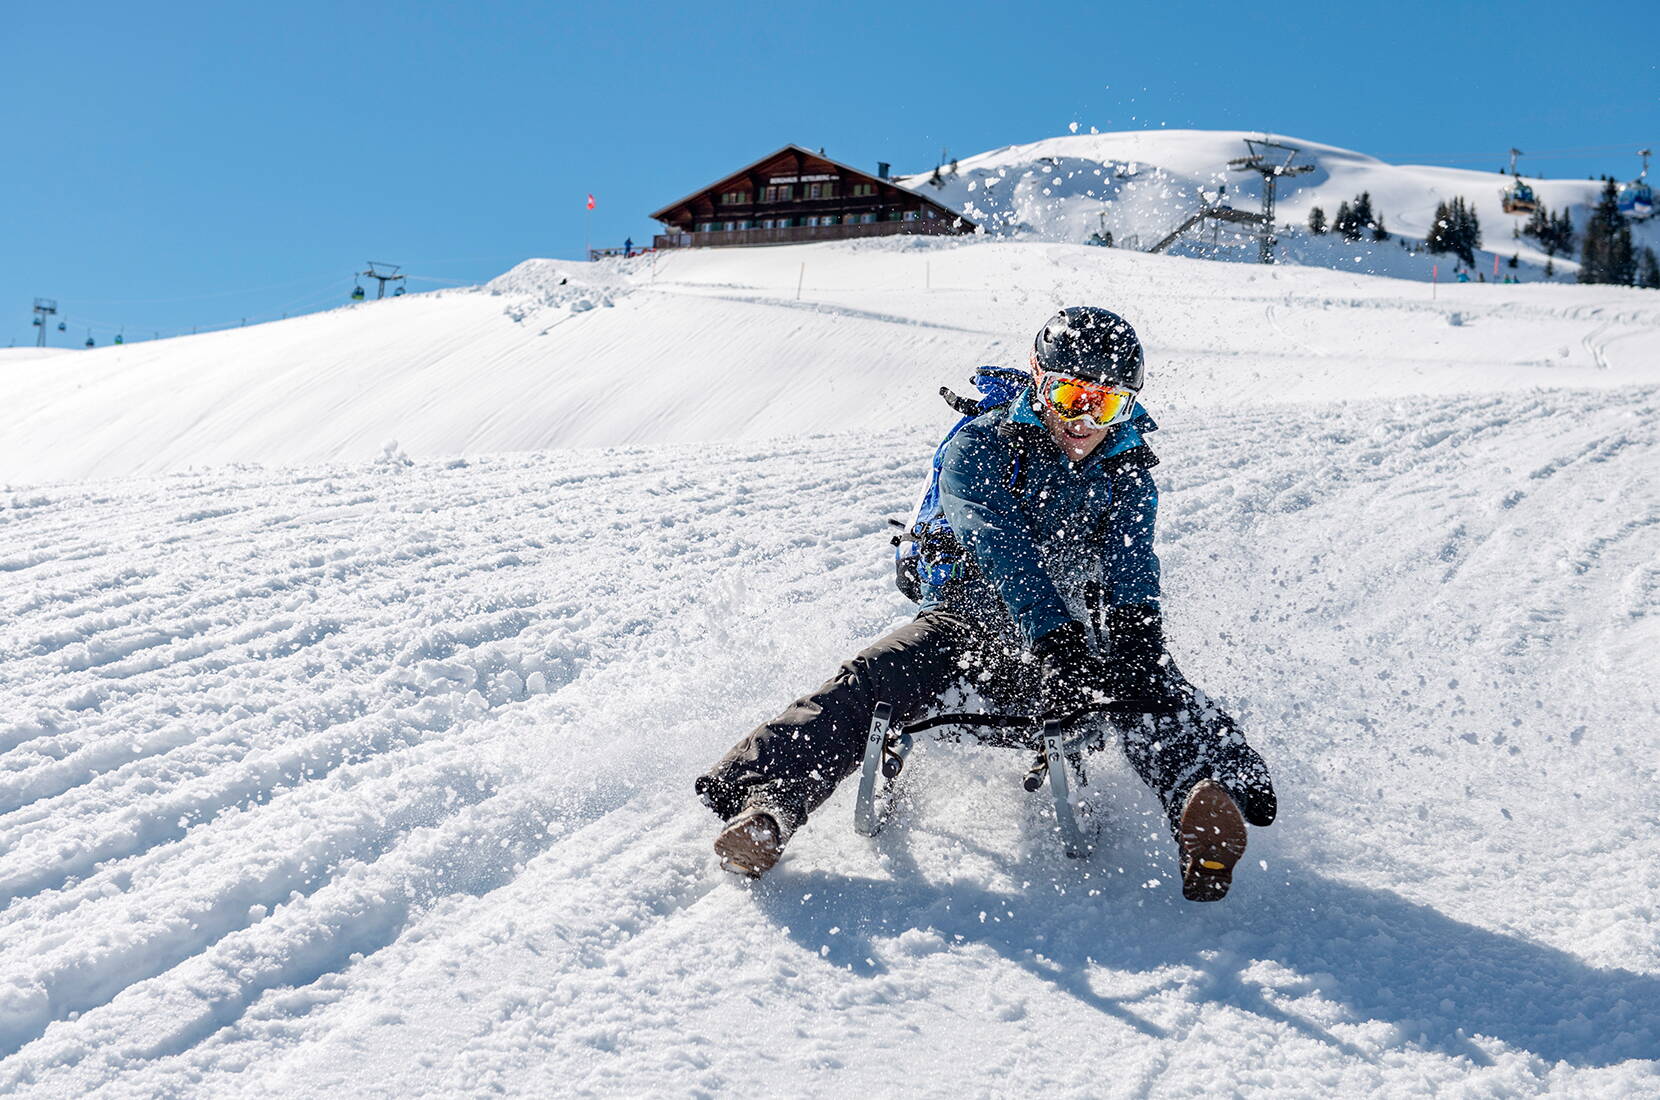 Ob rasant oder gemütlich – die drei Schlittelwege am Betelberg versprechen viel Spass und Schneegestöber. Als Alternative zum Skifahren, als Schlechtwetterprogramm oder einfach als Familienausflug sind die Schlittelwege ideal.